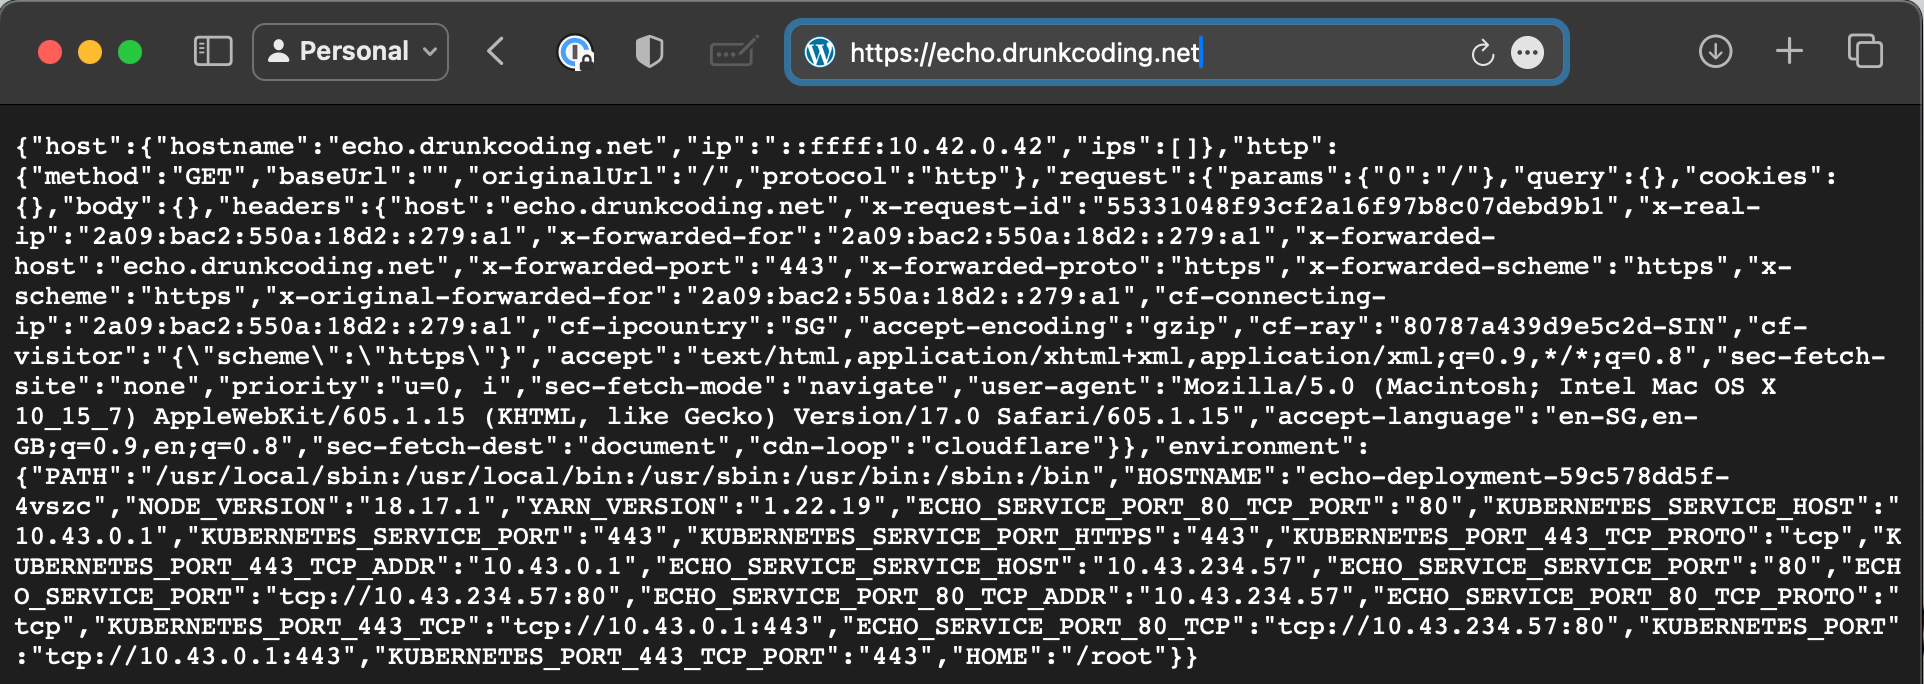 tls-drunkcoding-net certificate